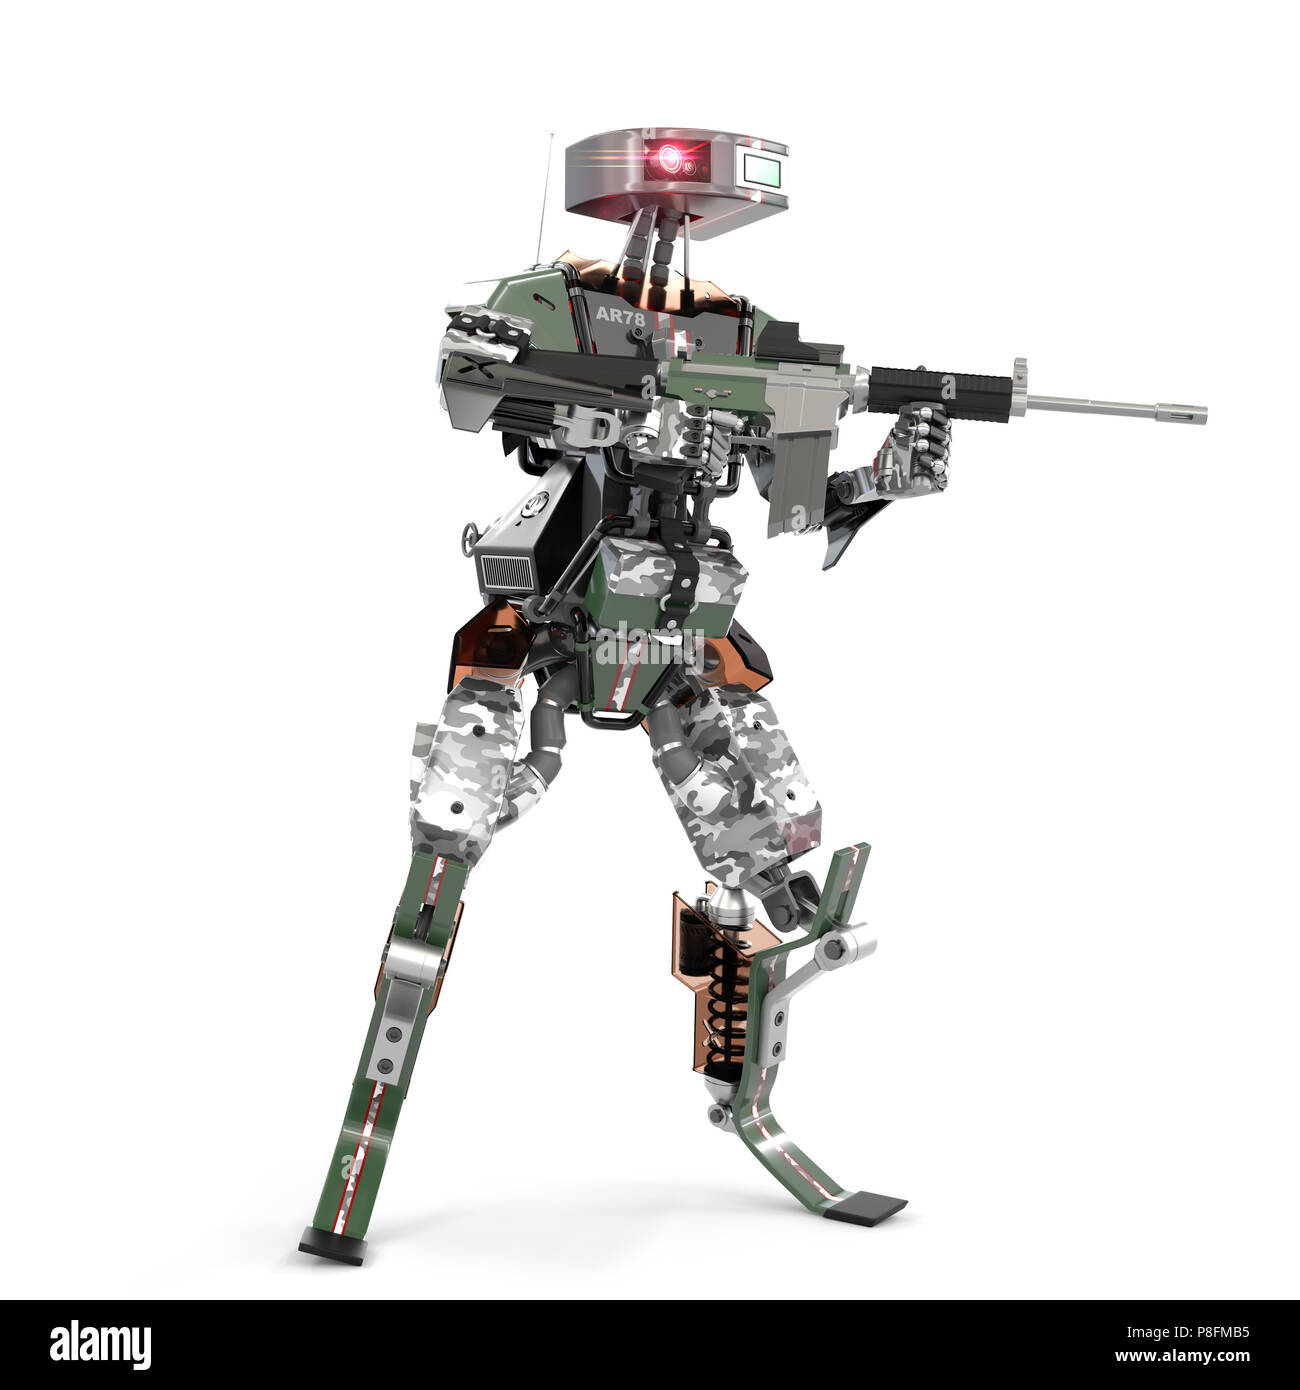 Autonomous weapons robots, 3d rendering Stock Photo